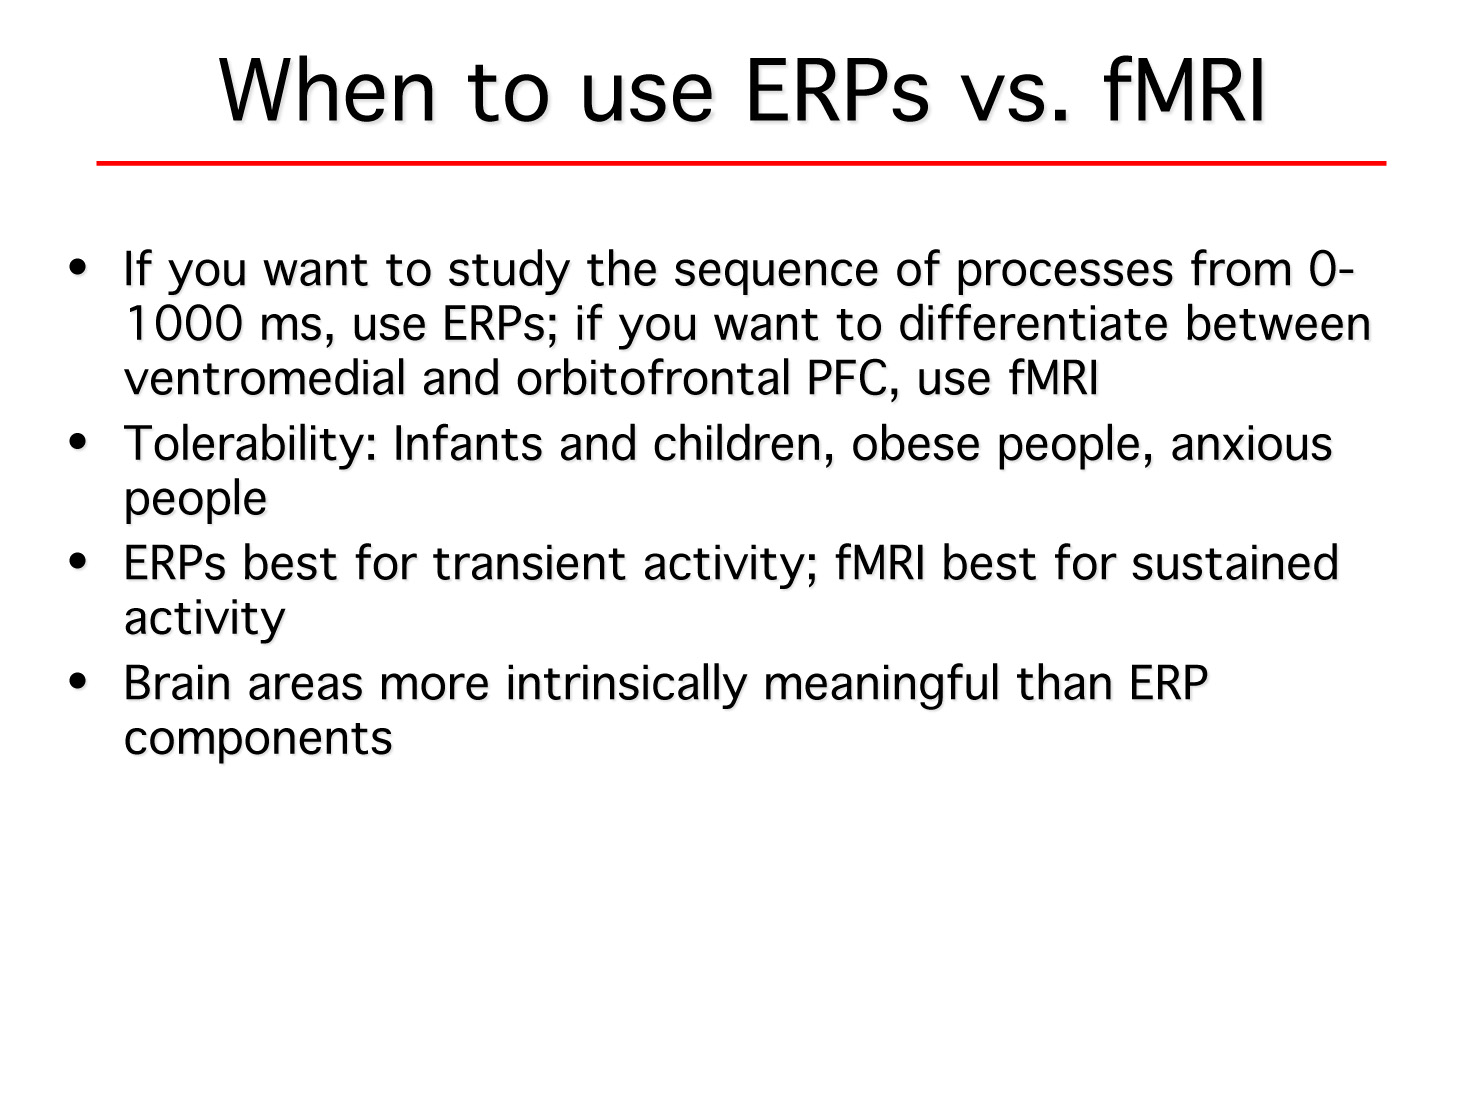 ERPs vs MRI.jpg